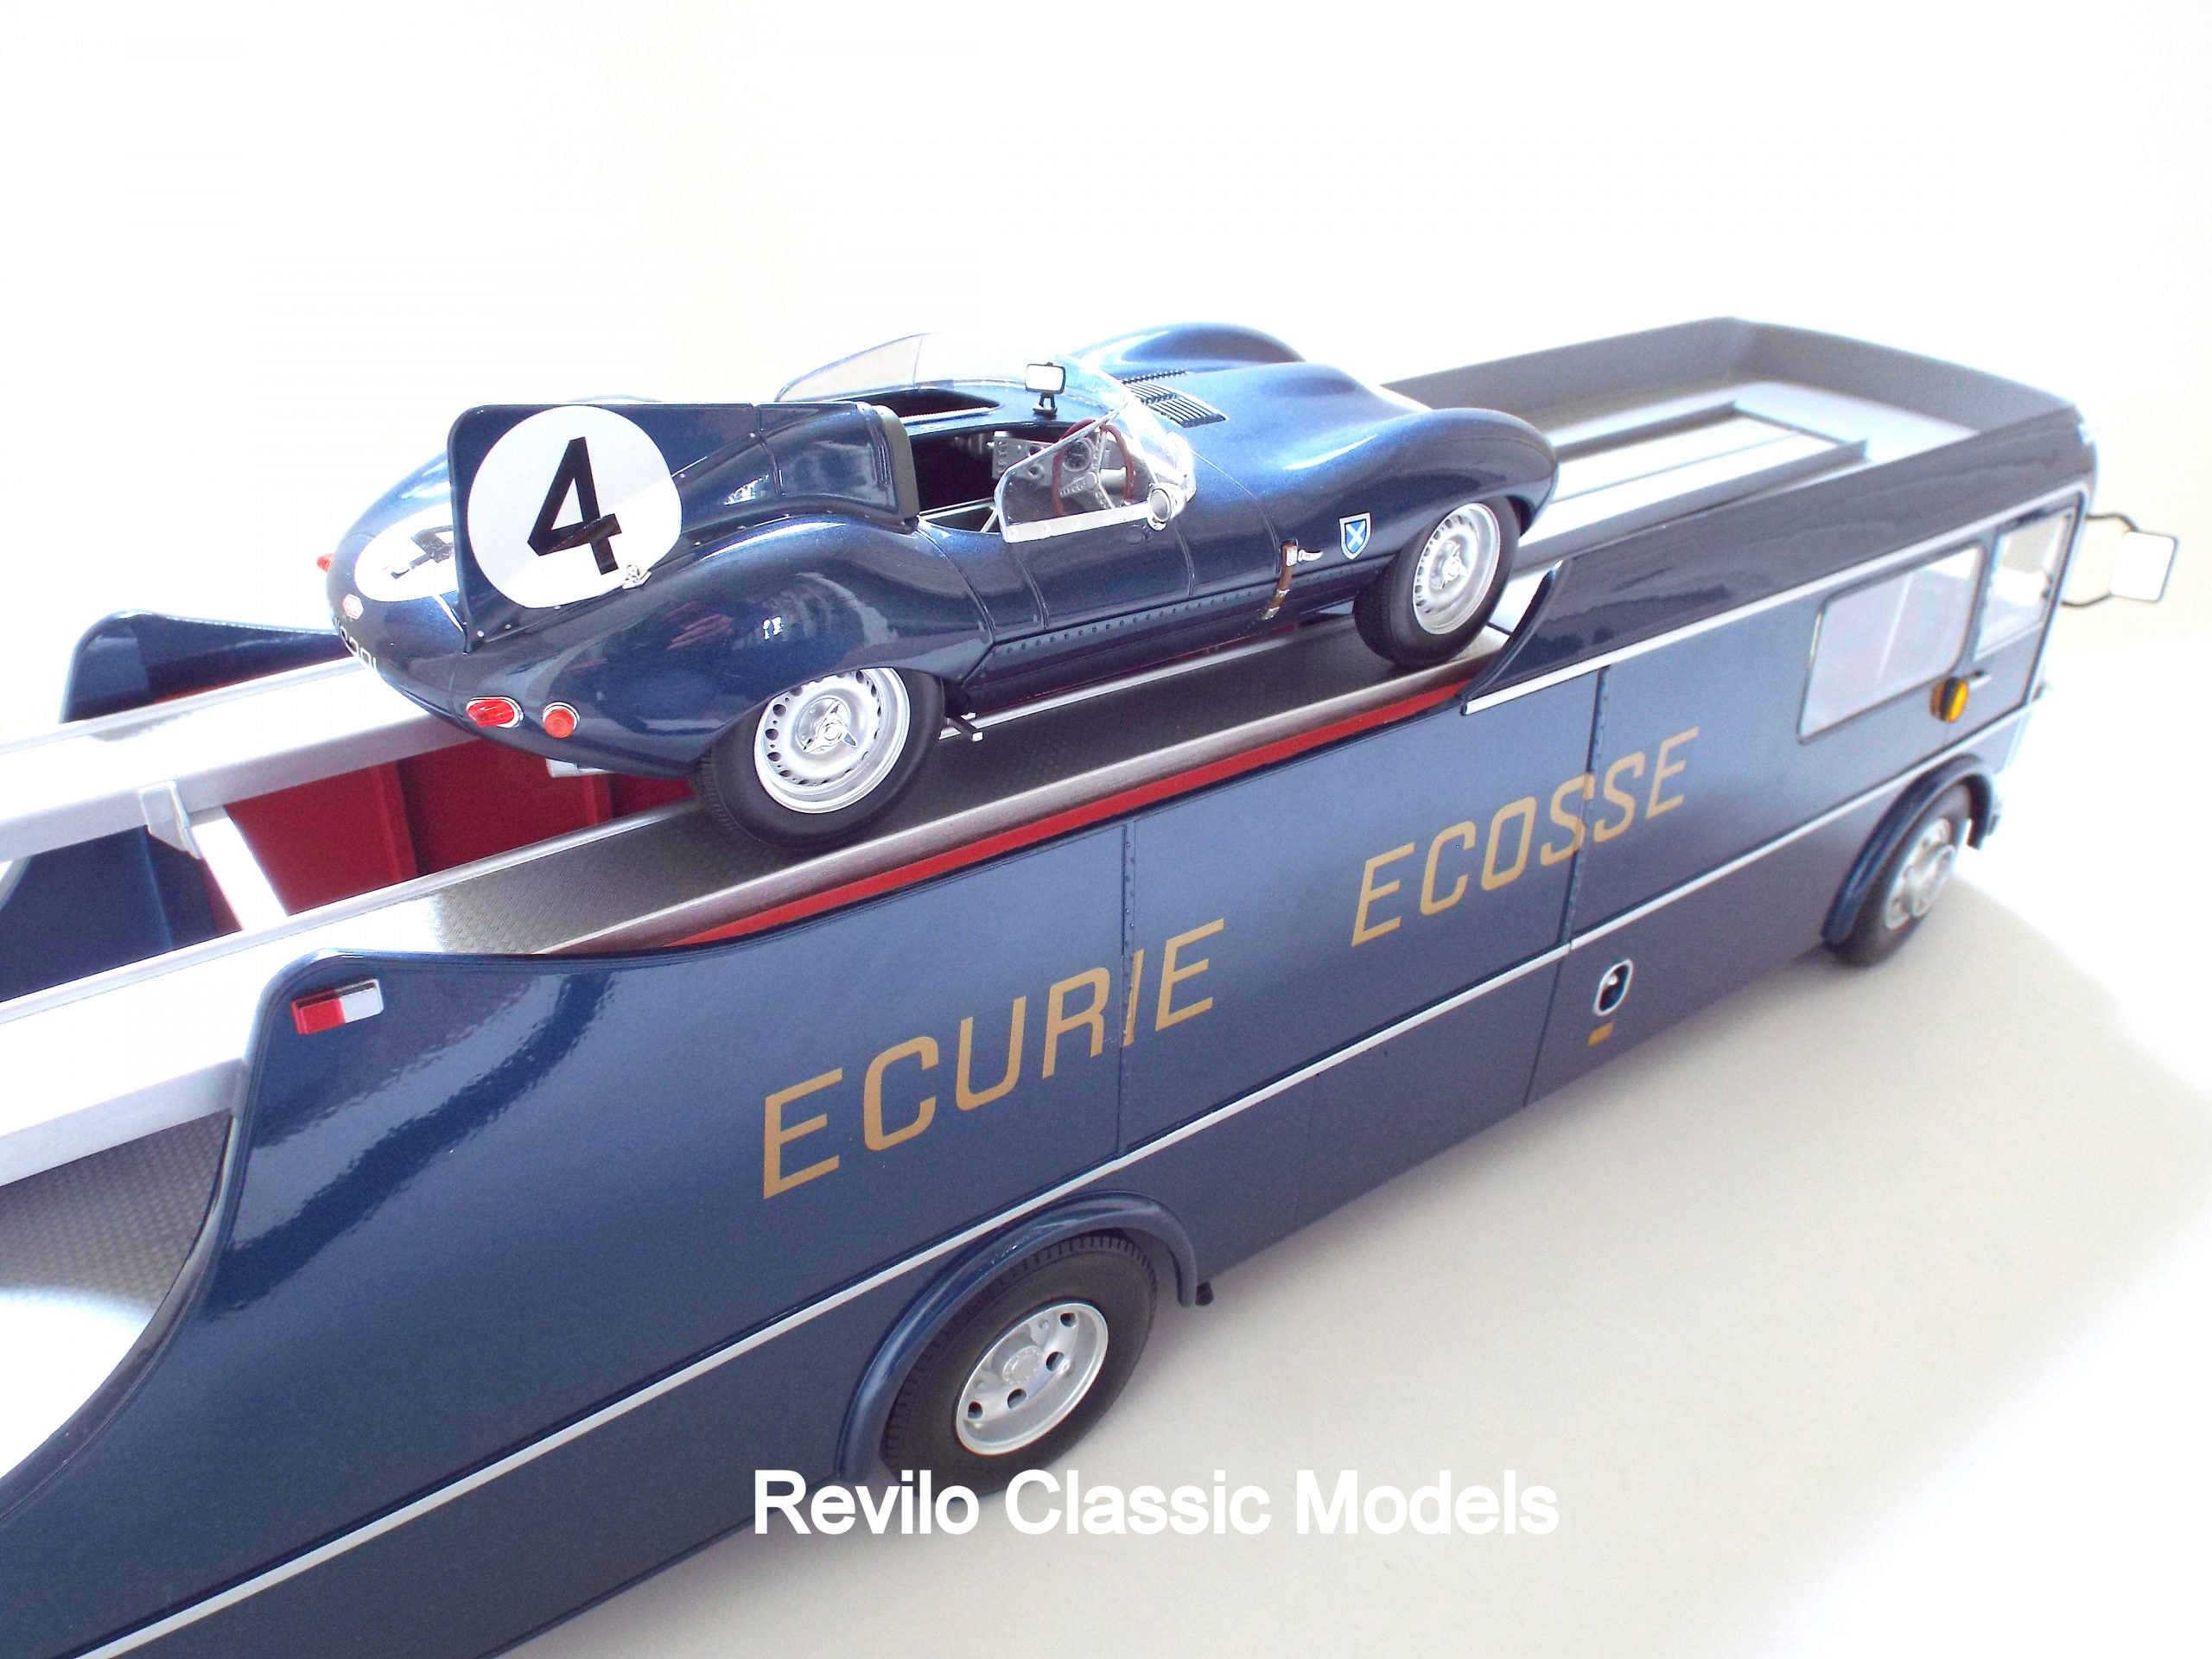 1959 Ecurie Ecosse Race Transporter escala 1:18